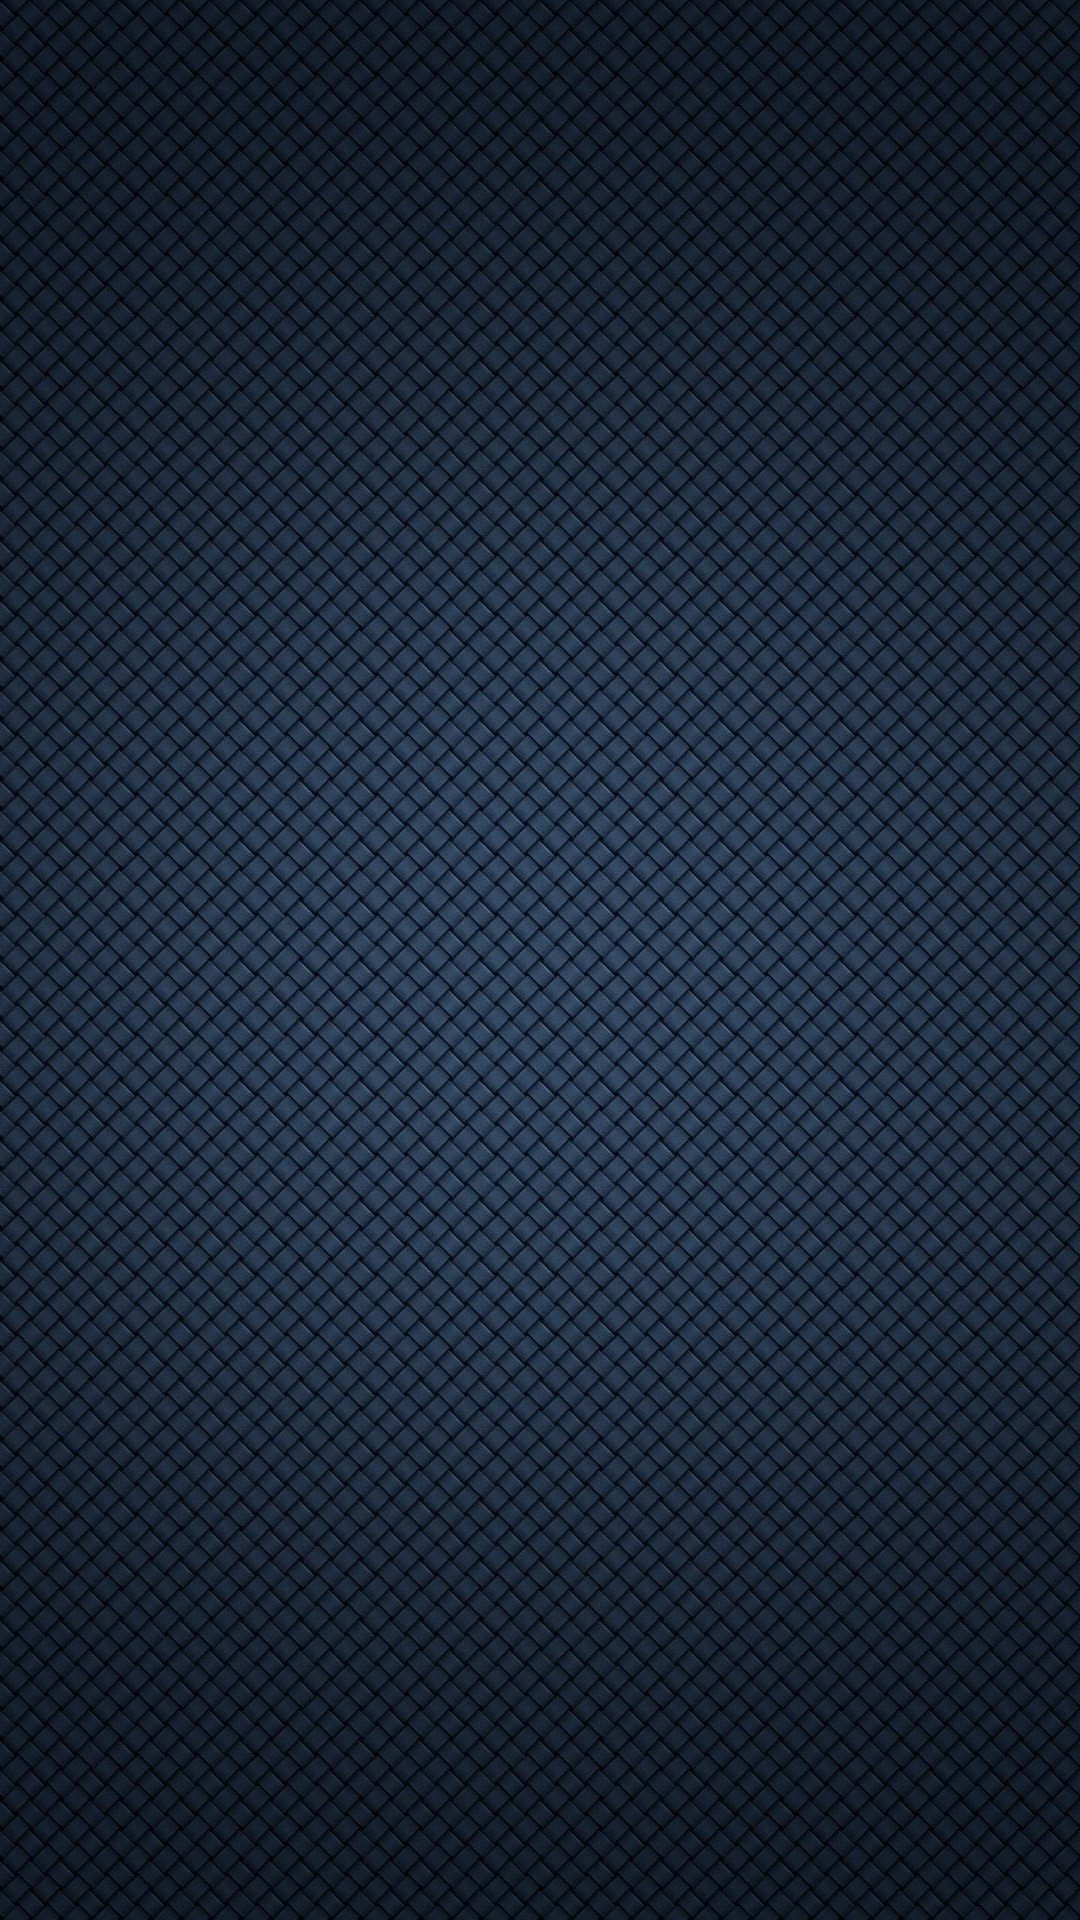 Black Wallpaper for iPhone 6s - WallpaperSafari